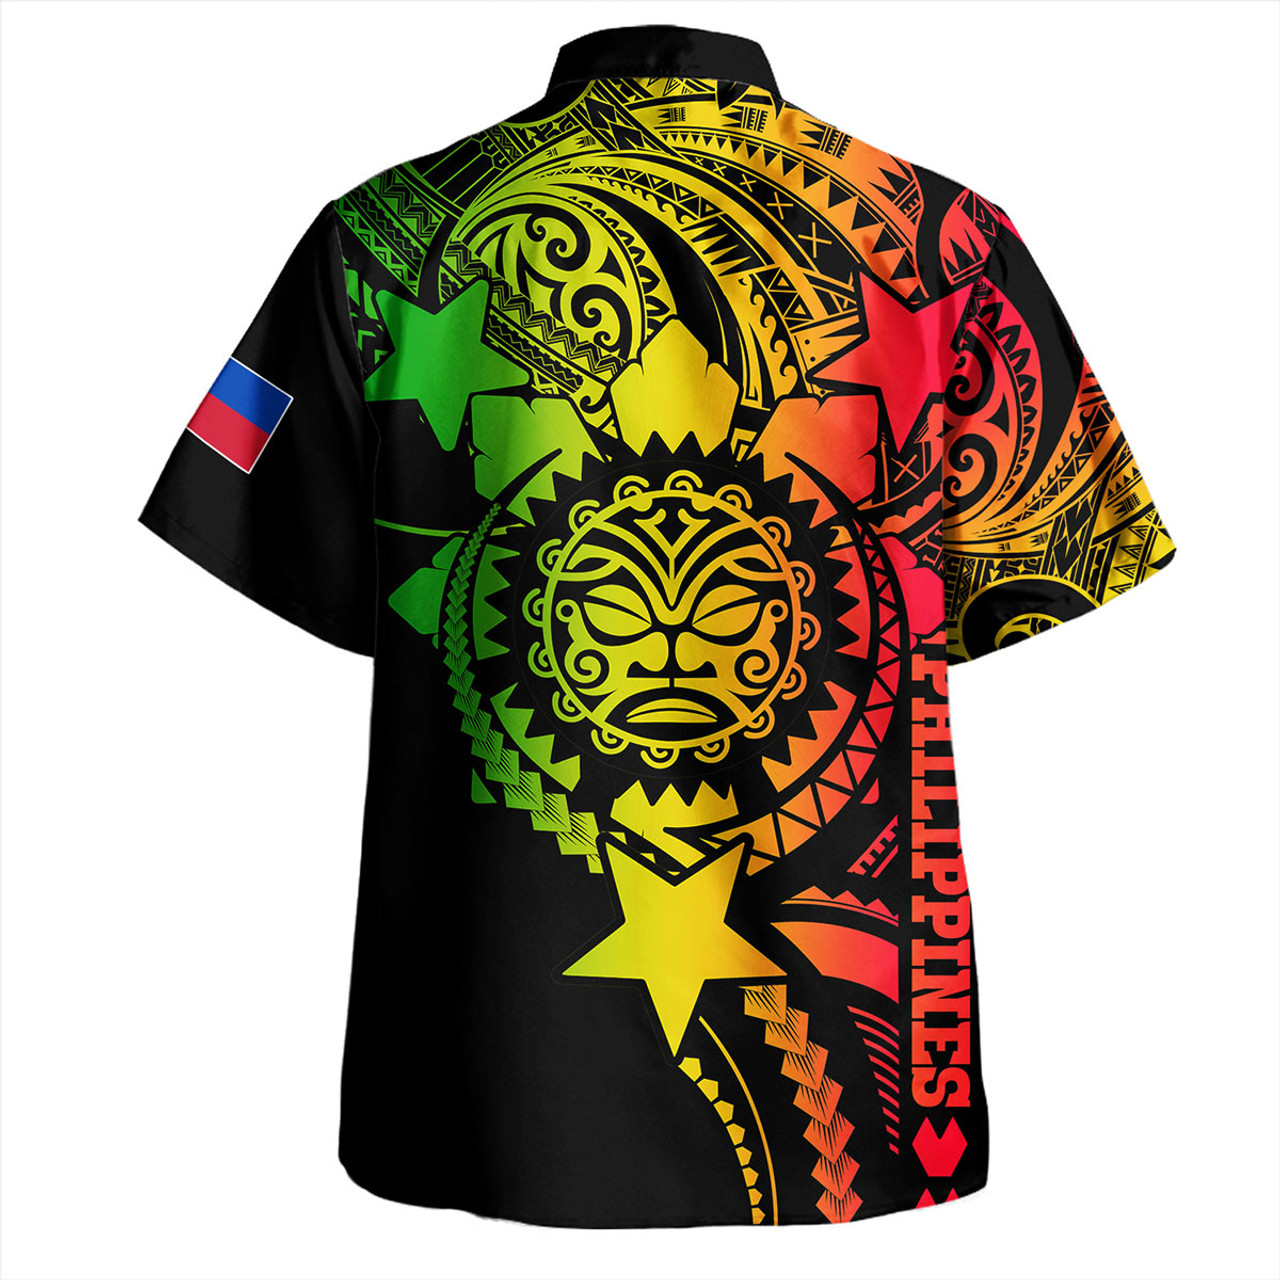 Philippines Filipinos Hawaiian Shirt - Proud To Be Filipino Tribal Sun Batok Reggae Style